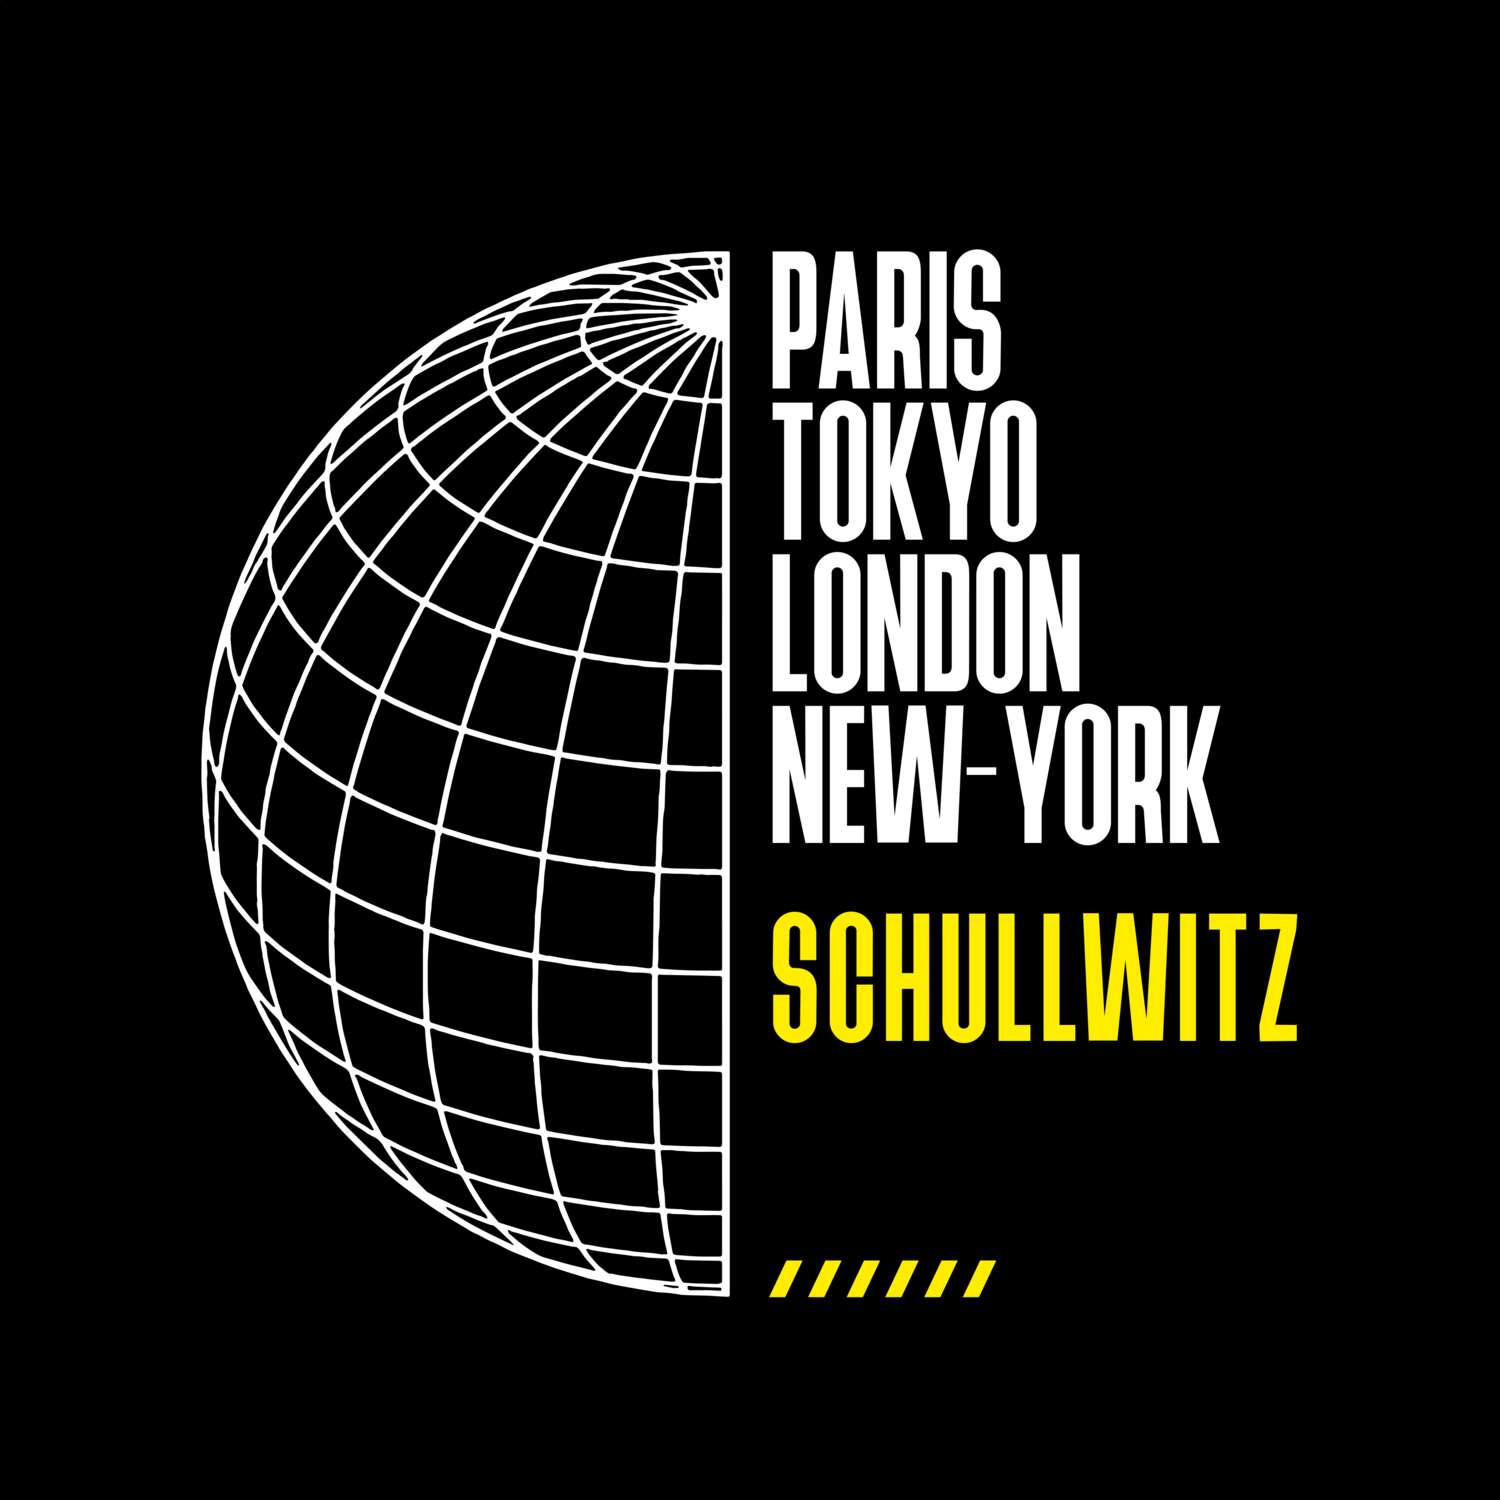 Schullwitz T-Shirt »Paris Tokyo London«